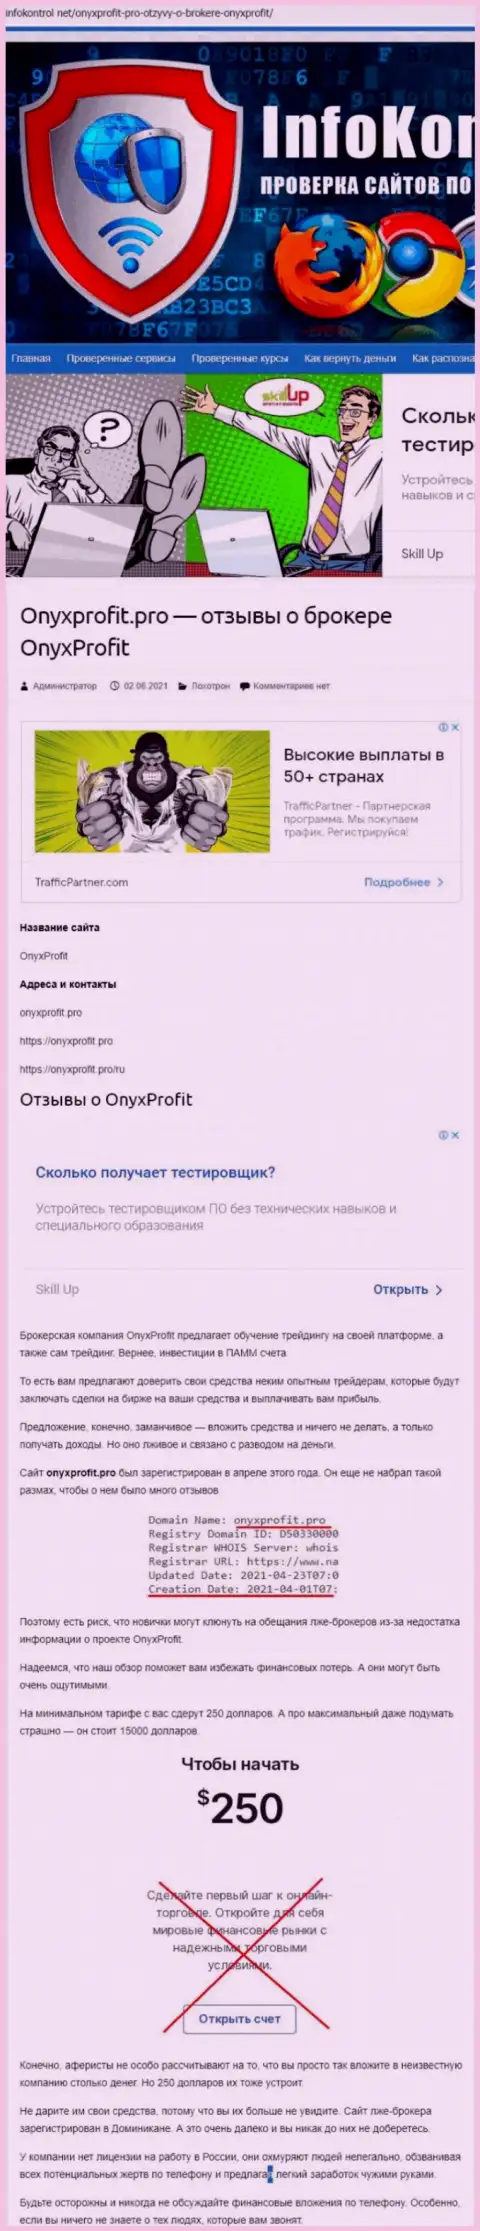 OnyxProfit - это очередной обман, вестись на который не стоит (обзор неправомерных действий компании)